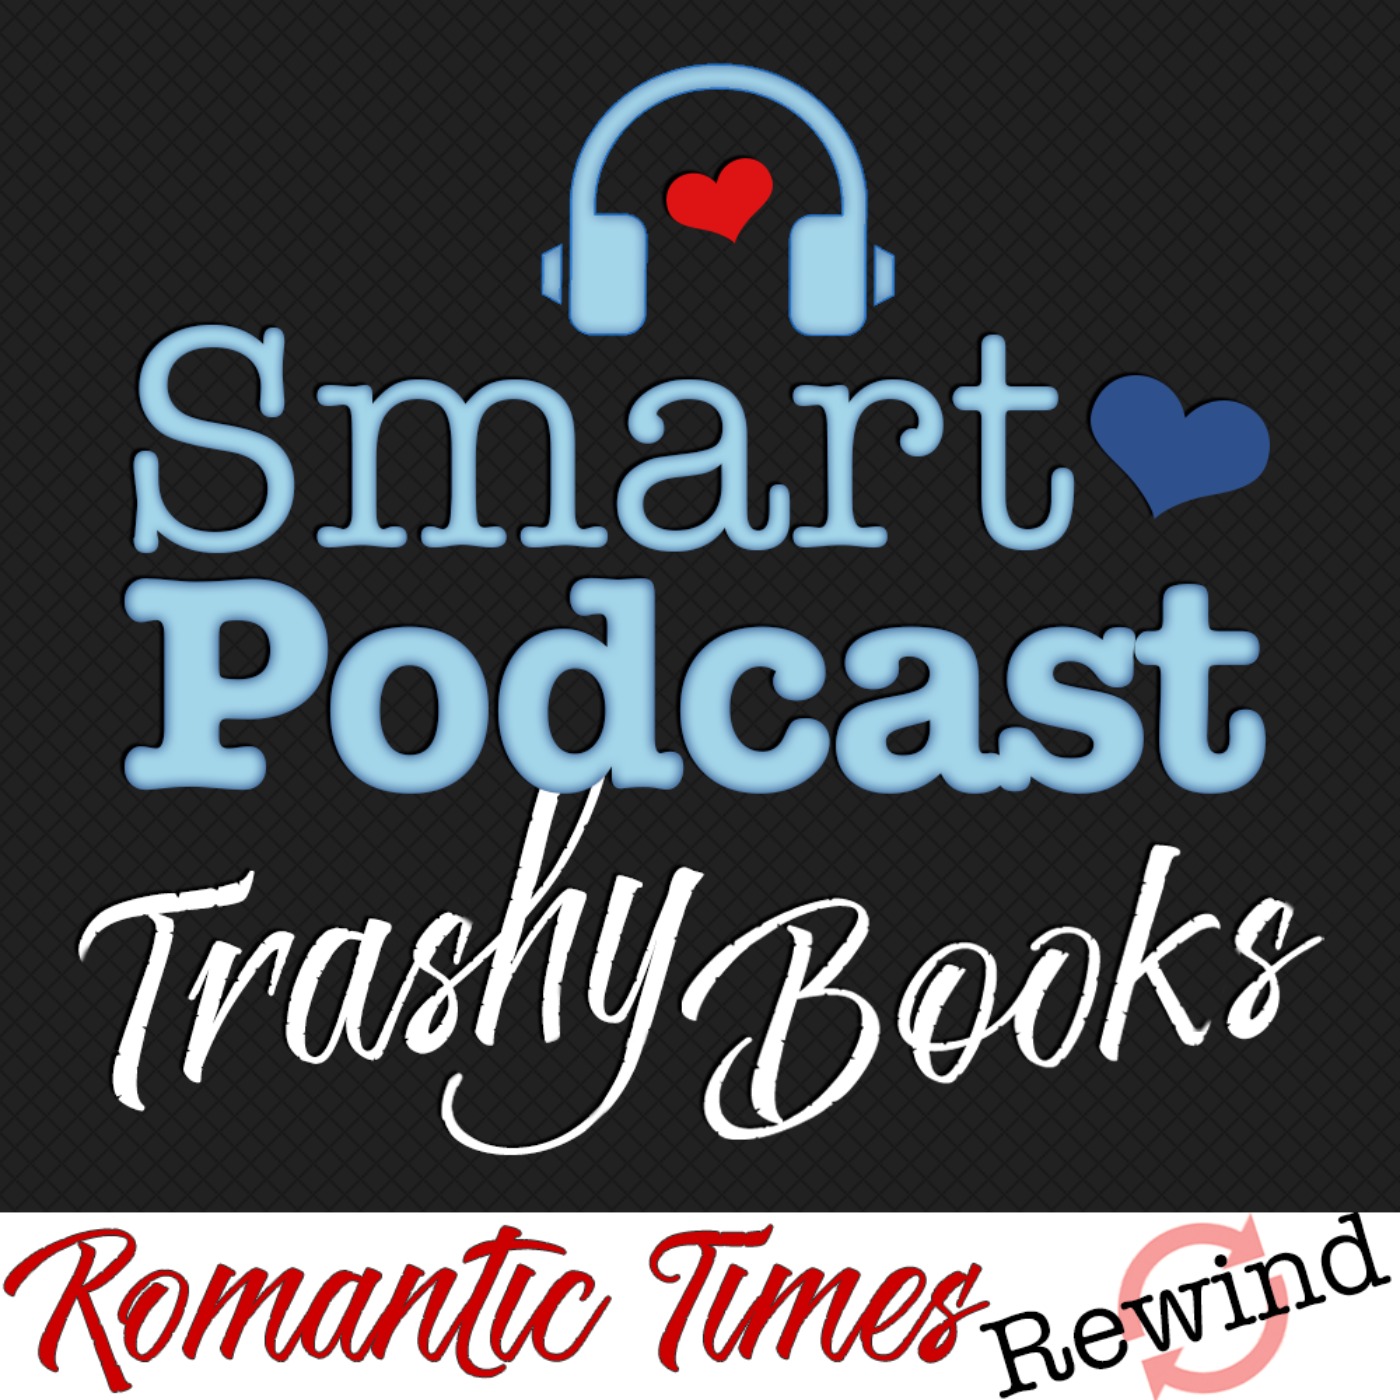 Bonus: Introducing Romantic Times Rewind